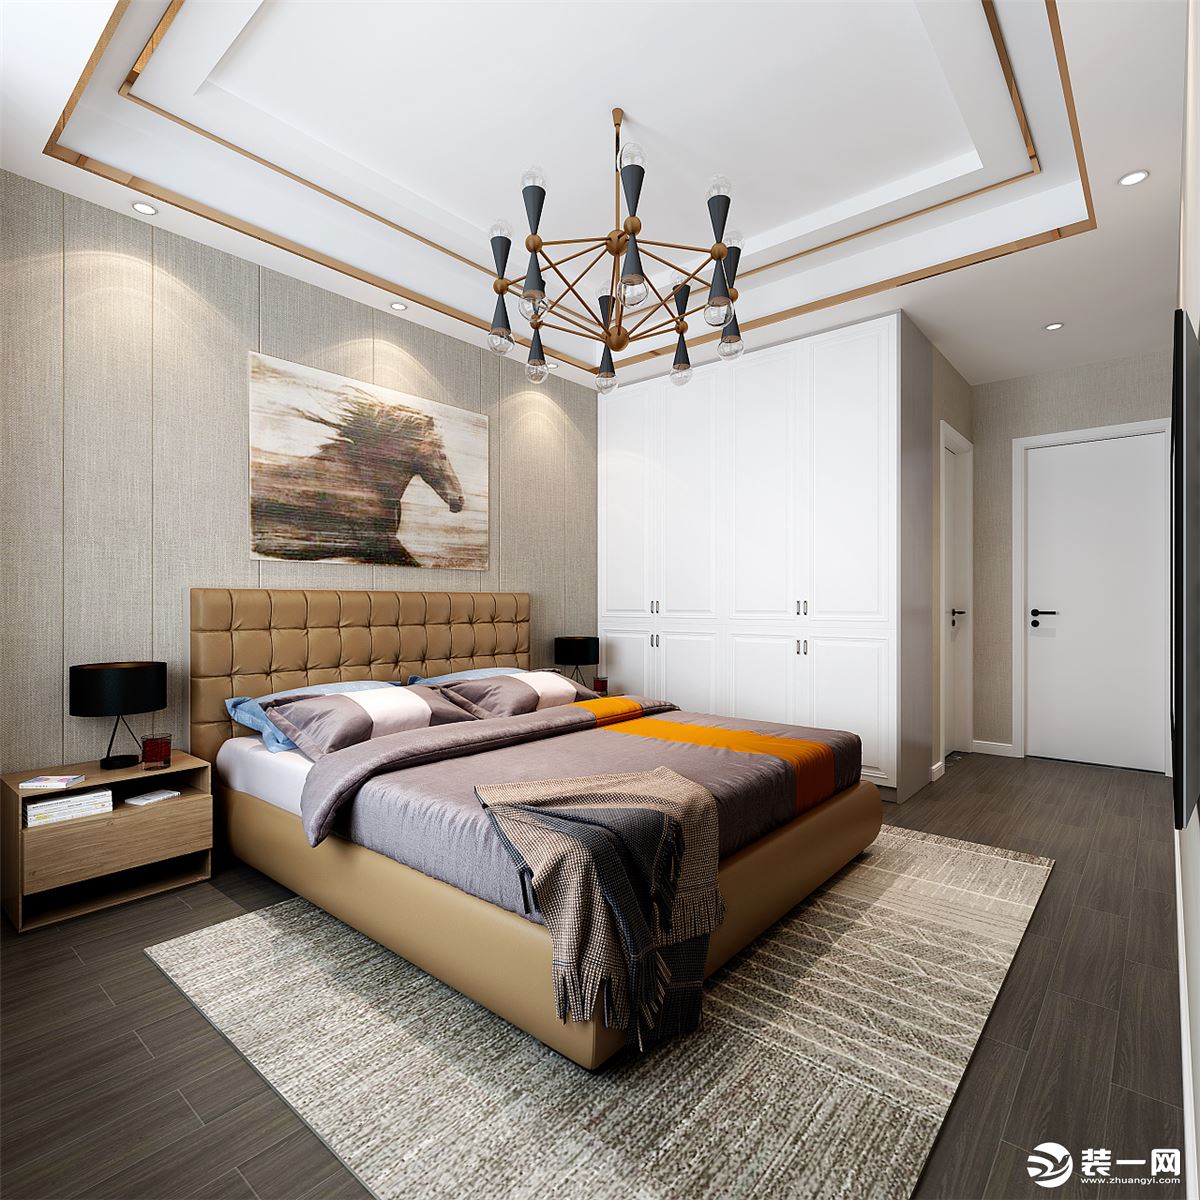 卧室与空间协调统一，整体设计一如既往没有浮夸，以传统与居家为标准